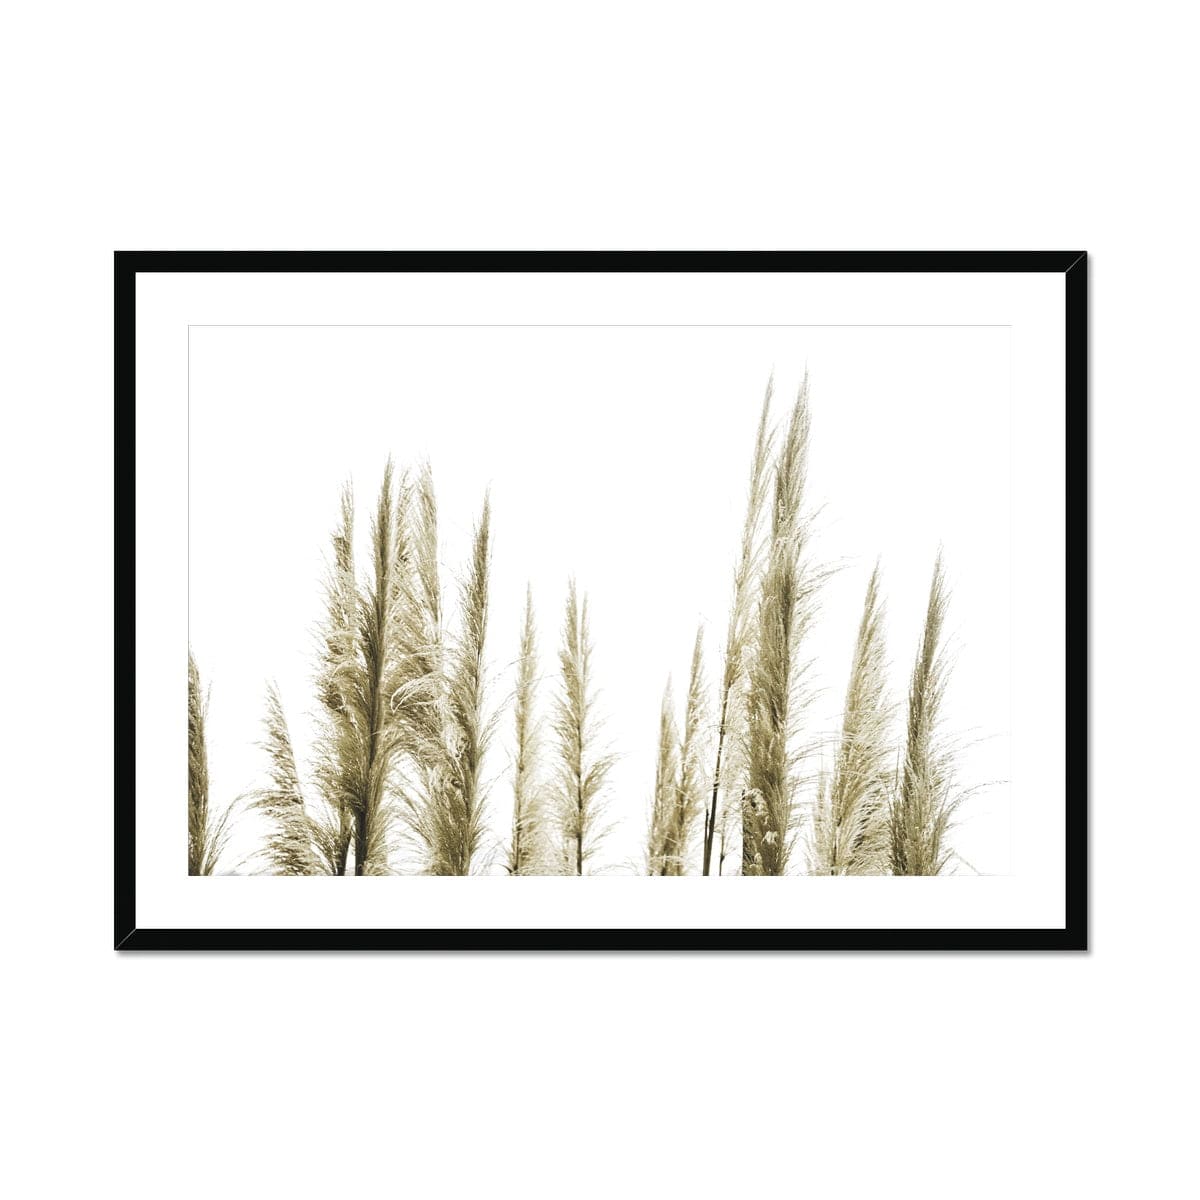 Adam Davies Framed 16"x12" (40x30cm) / Black Frame Feather Grass Sunlight Framed & Mounted Print